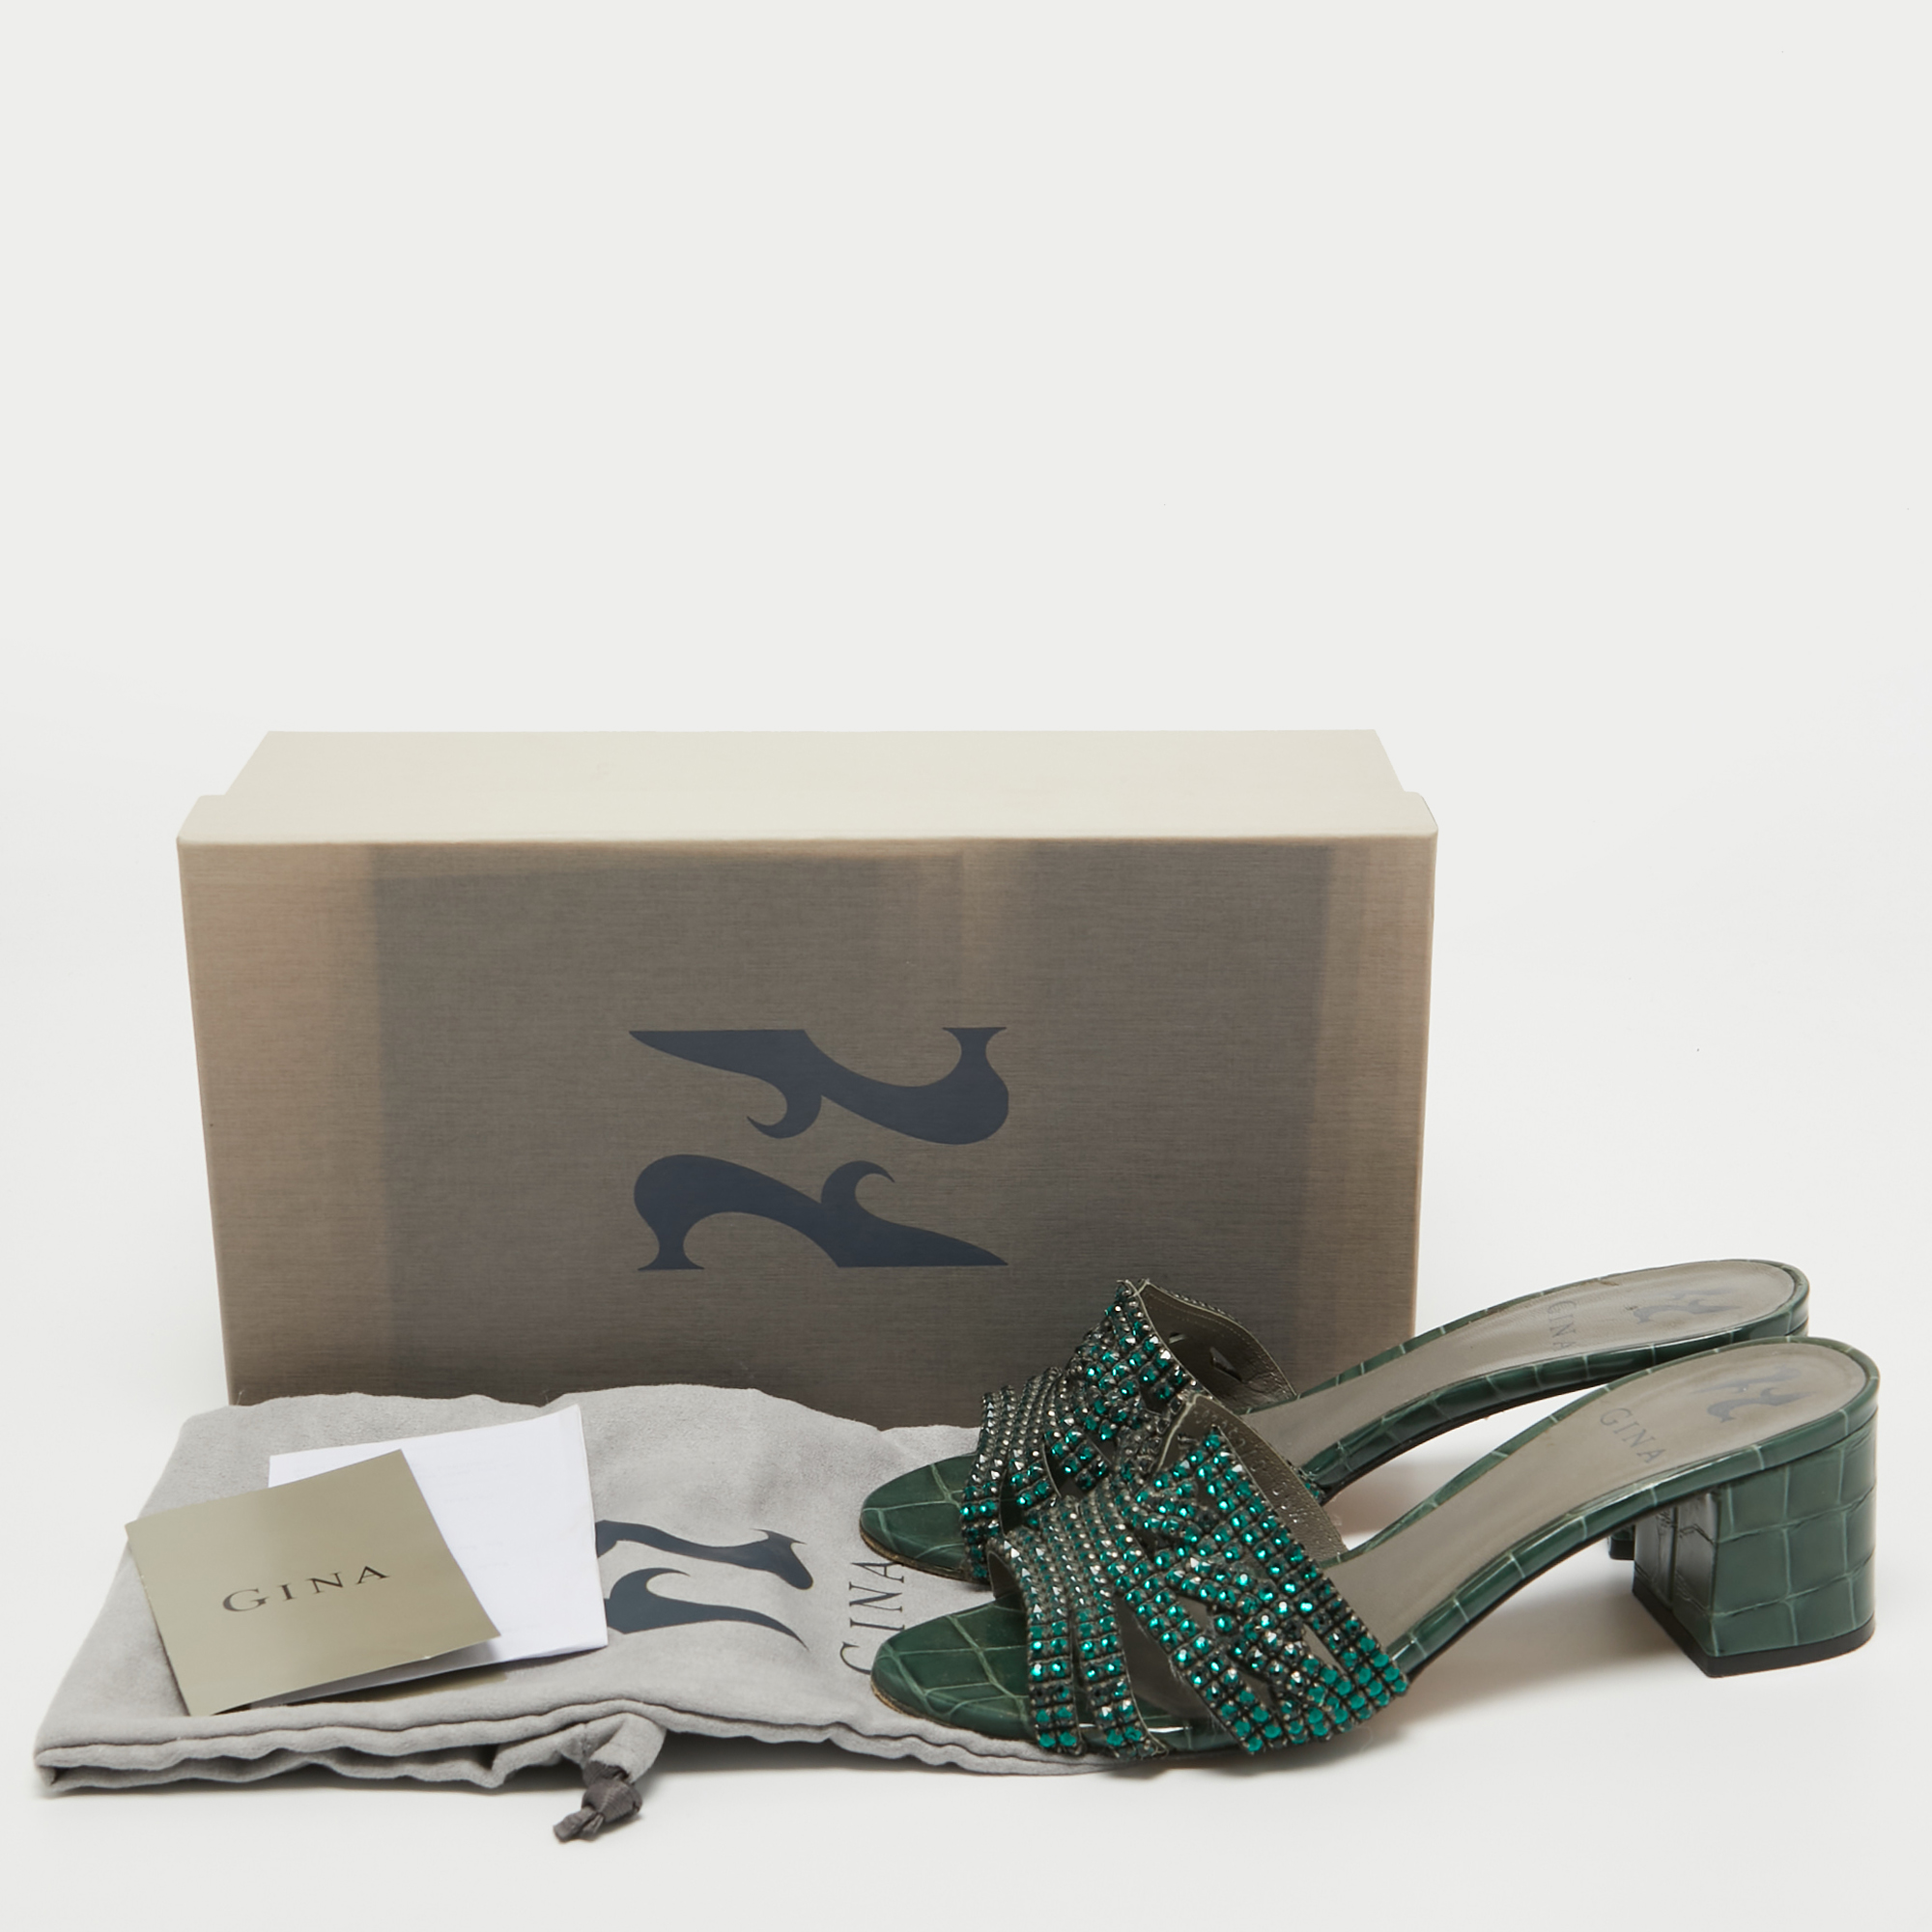 Gina Green Crystal Embellished Leather Slide Sandals Size 36.5